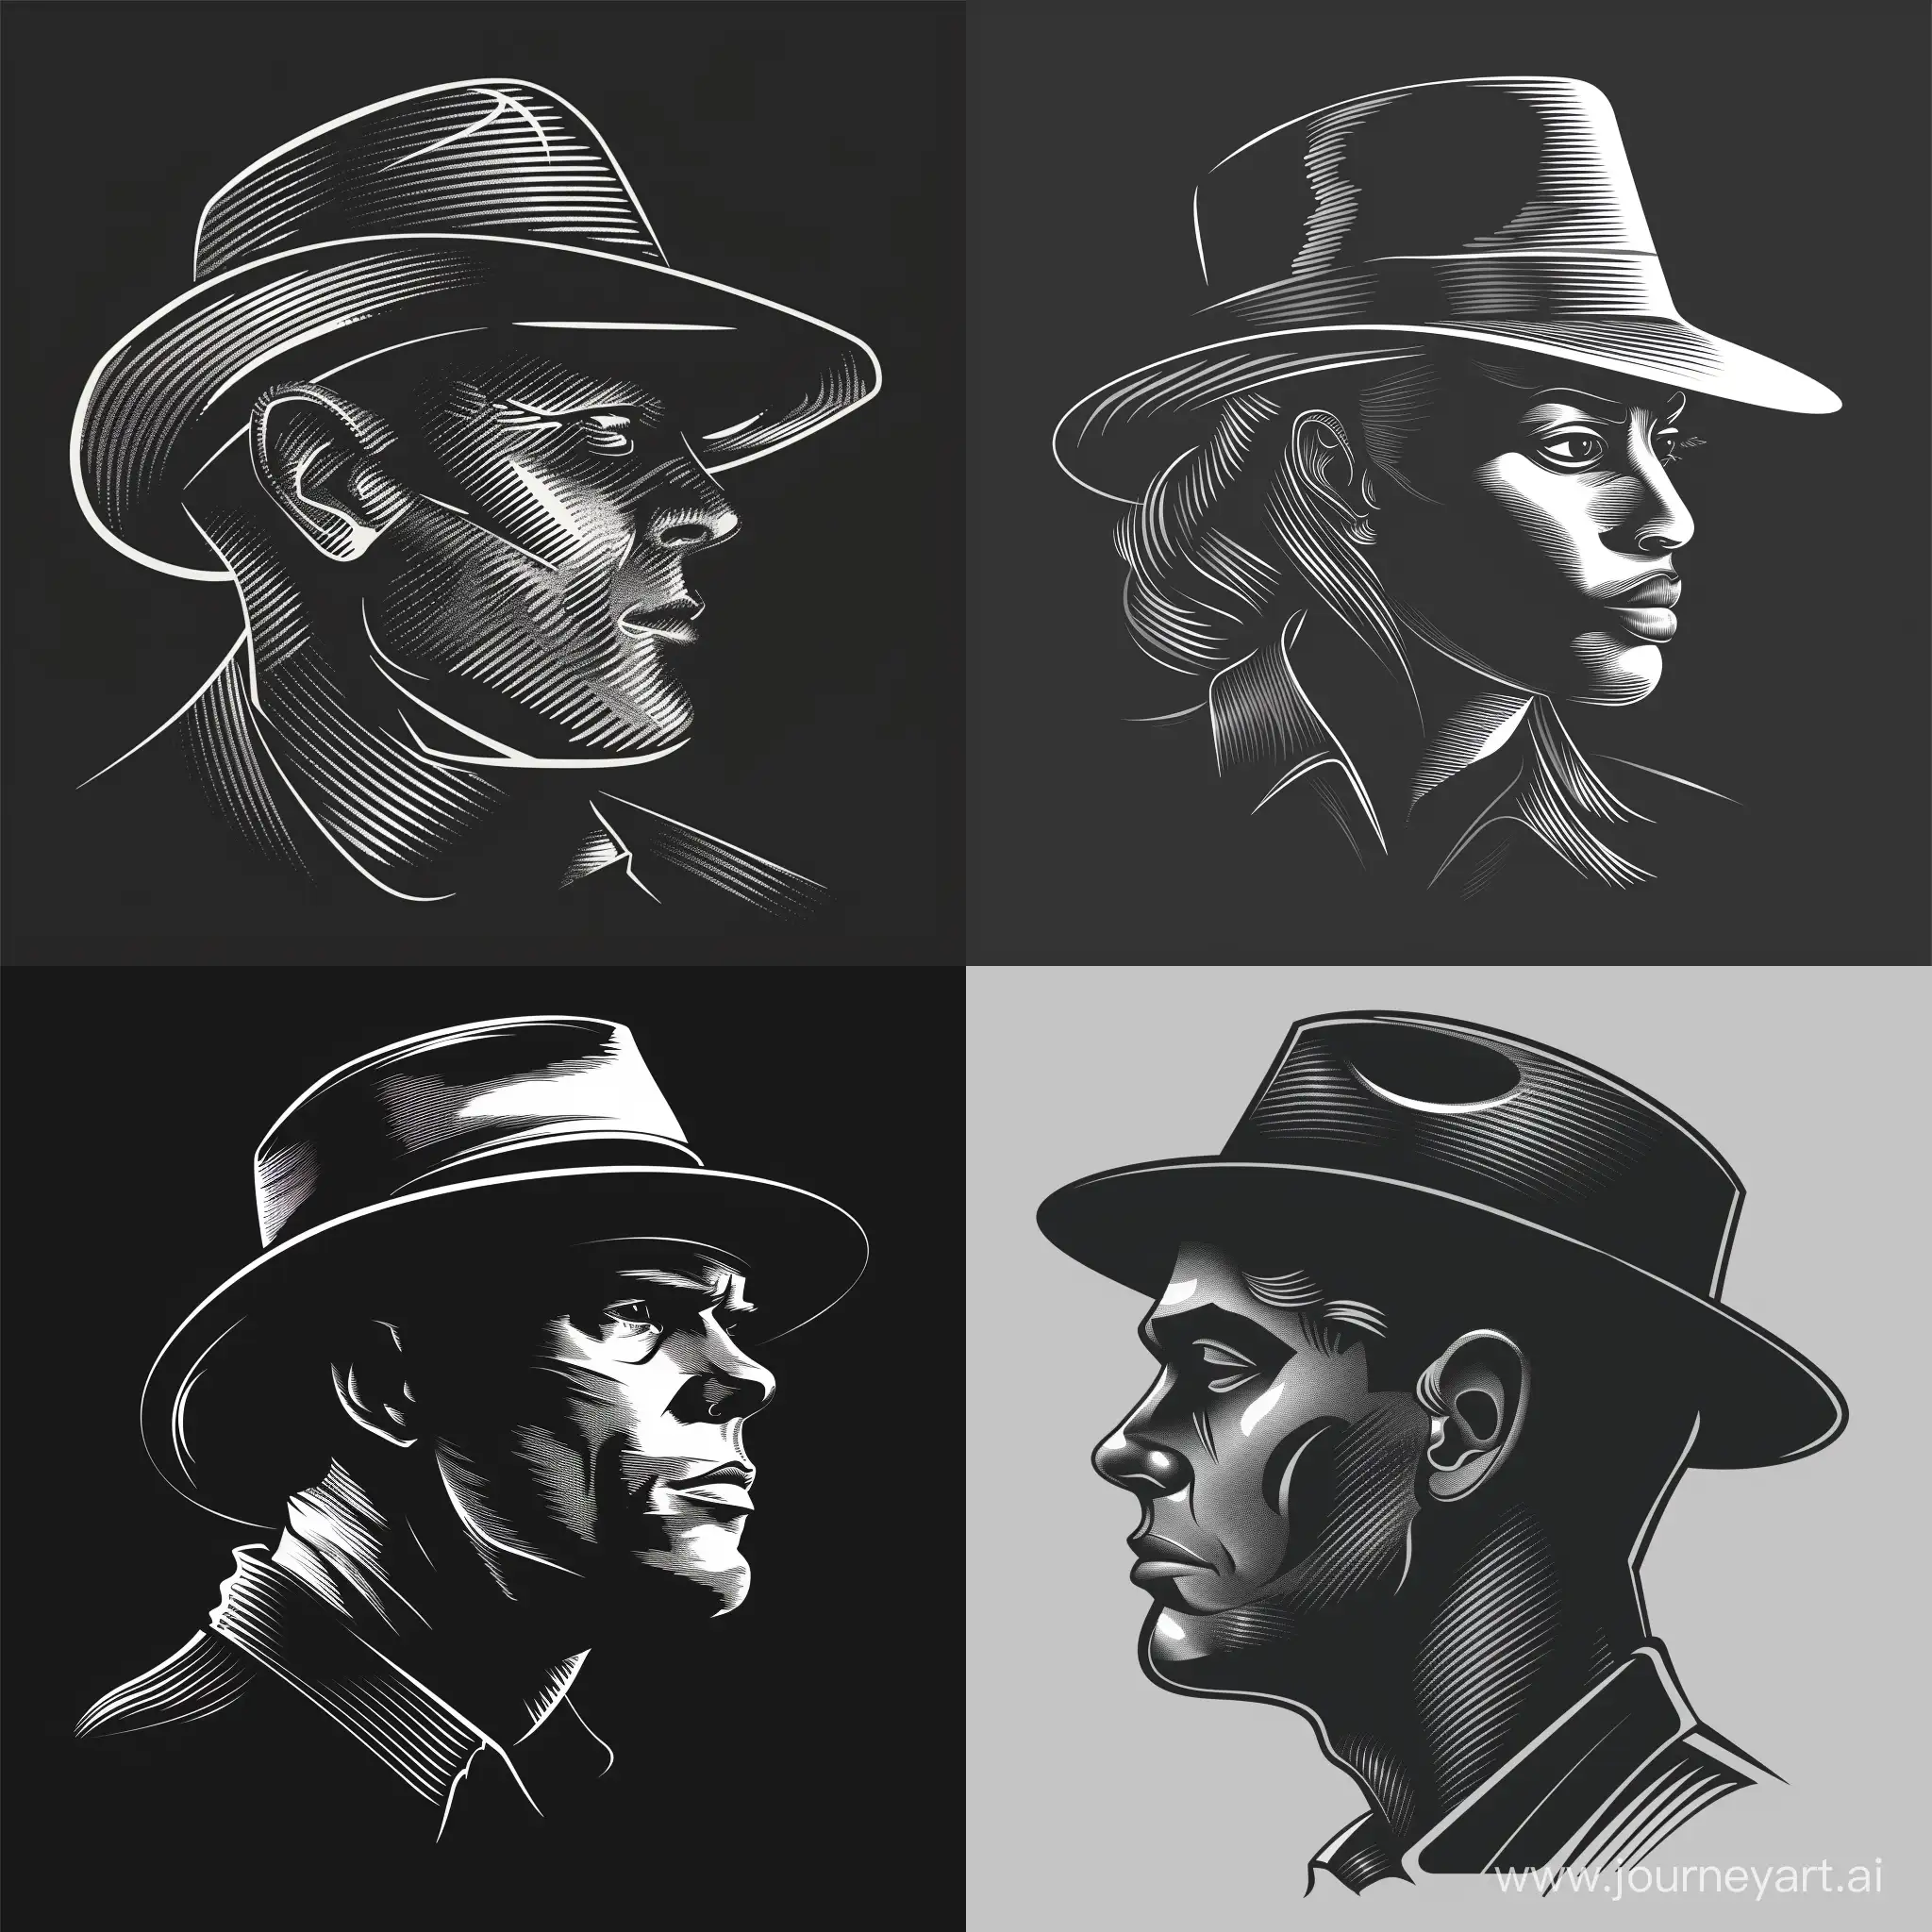 Suspicious-Mafia-Member-in-Black-and-White-Profile-Portrait-with-Hat